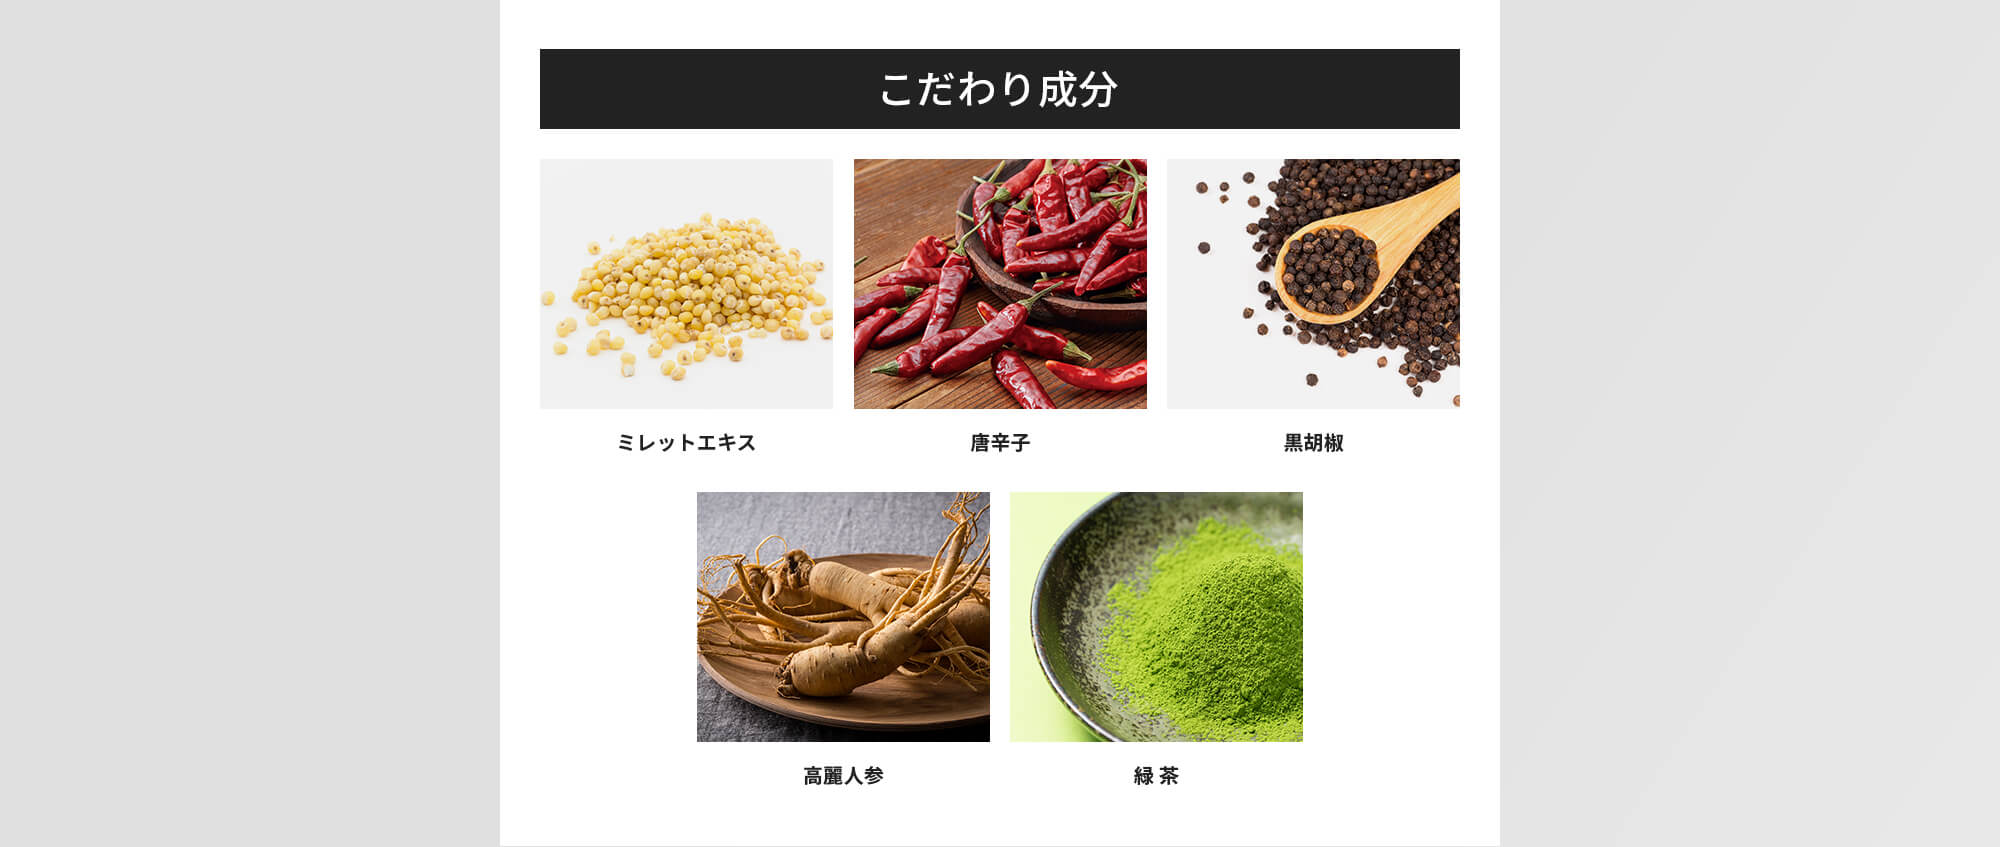 こだわり成分：ミレットエキス / 唐辛子 / 黒胡椒 / 高麗人参 / 緑茶